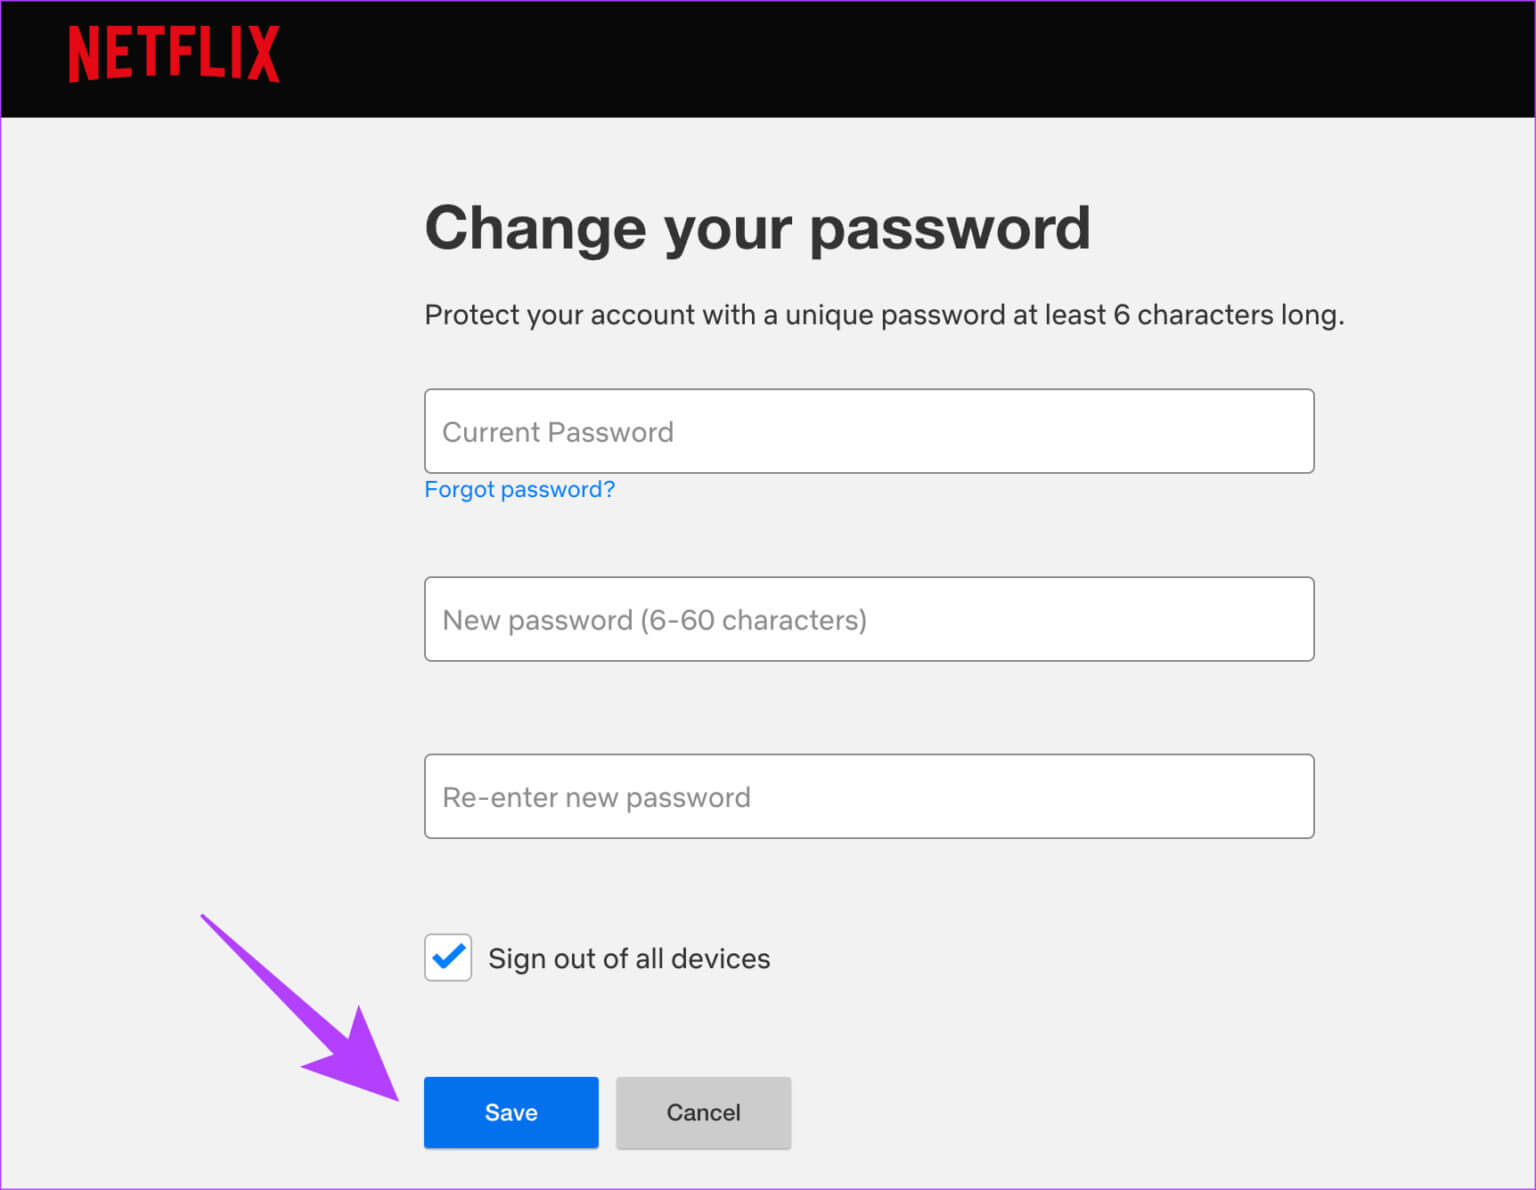 كيفية التحقق من الأجهزة وإزالتها من حساب Netflix - %categories